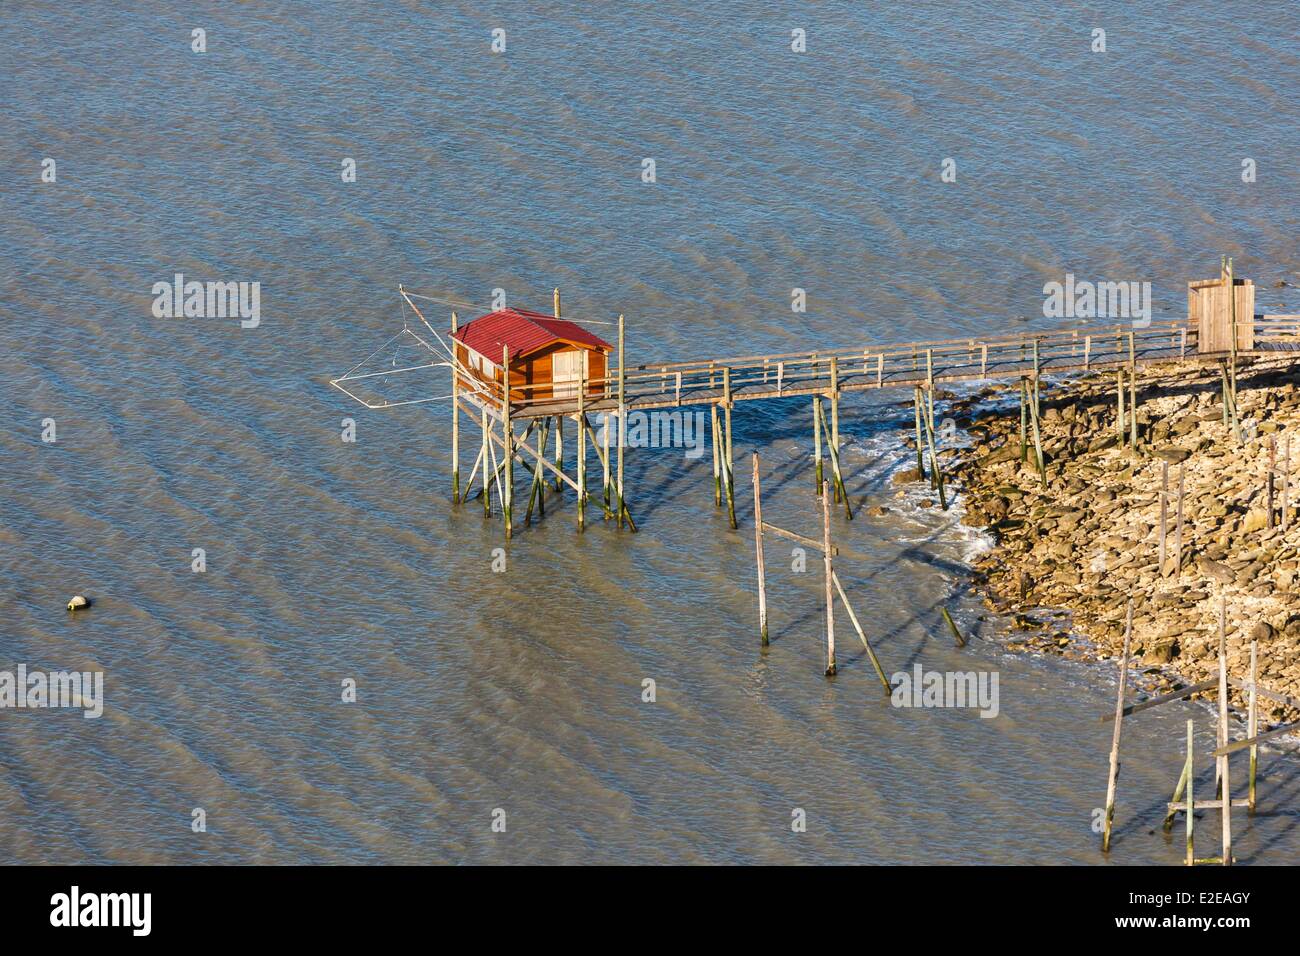 La France, Charente-Maritime, Angoulins, la pêche (Photographie aérienne) Banque D'Images